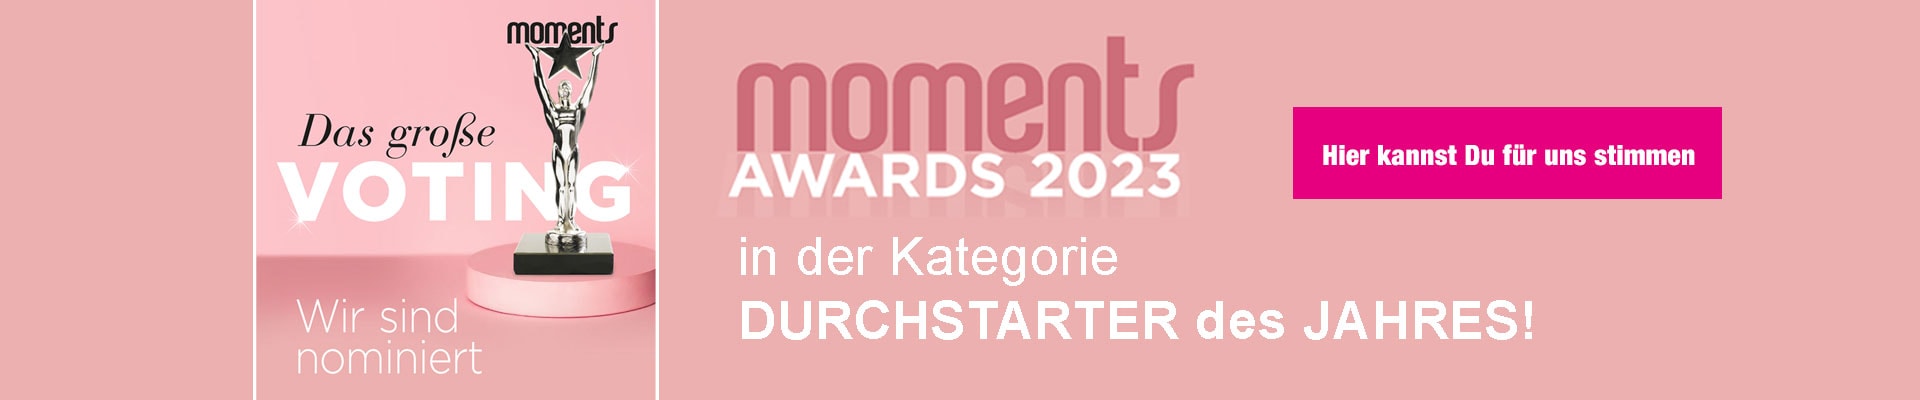 Weizer Schafbauern Nominierung Moments Award